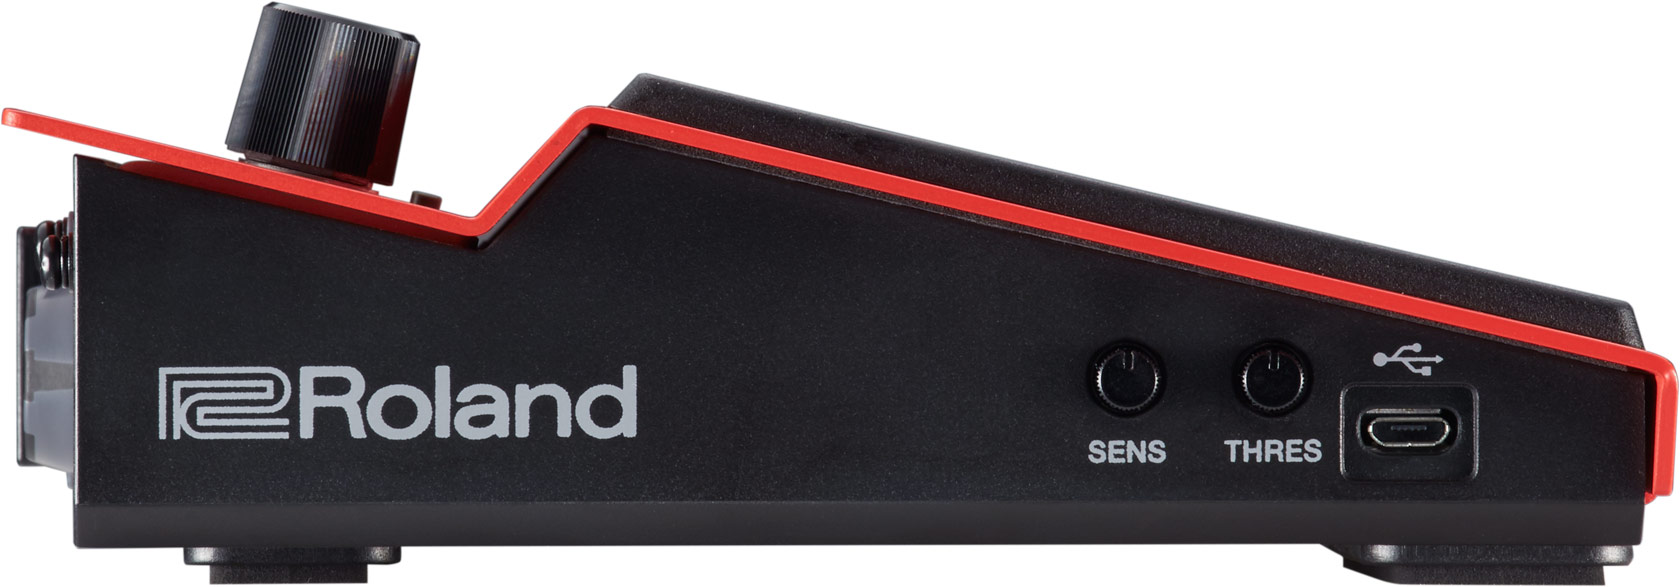 Roland Spd One W Wave - Elektronisch drumstel pad - Variation 3